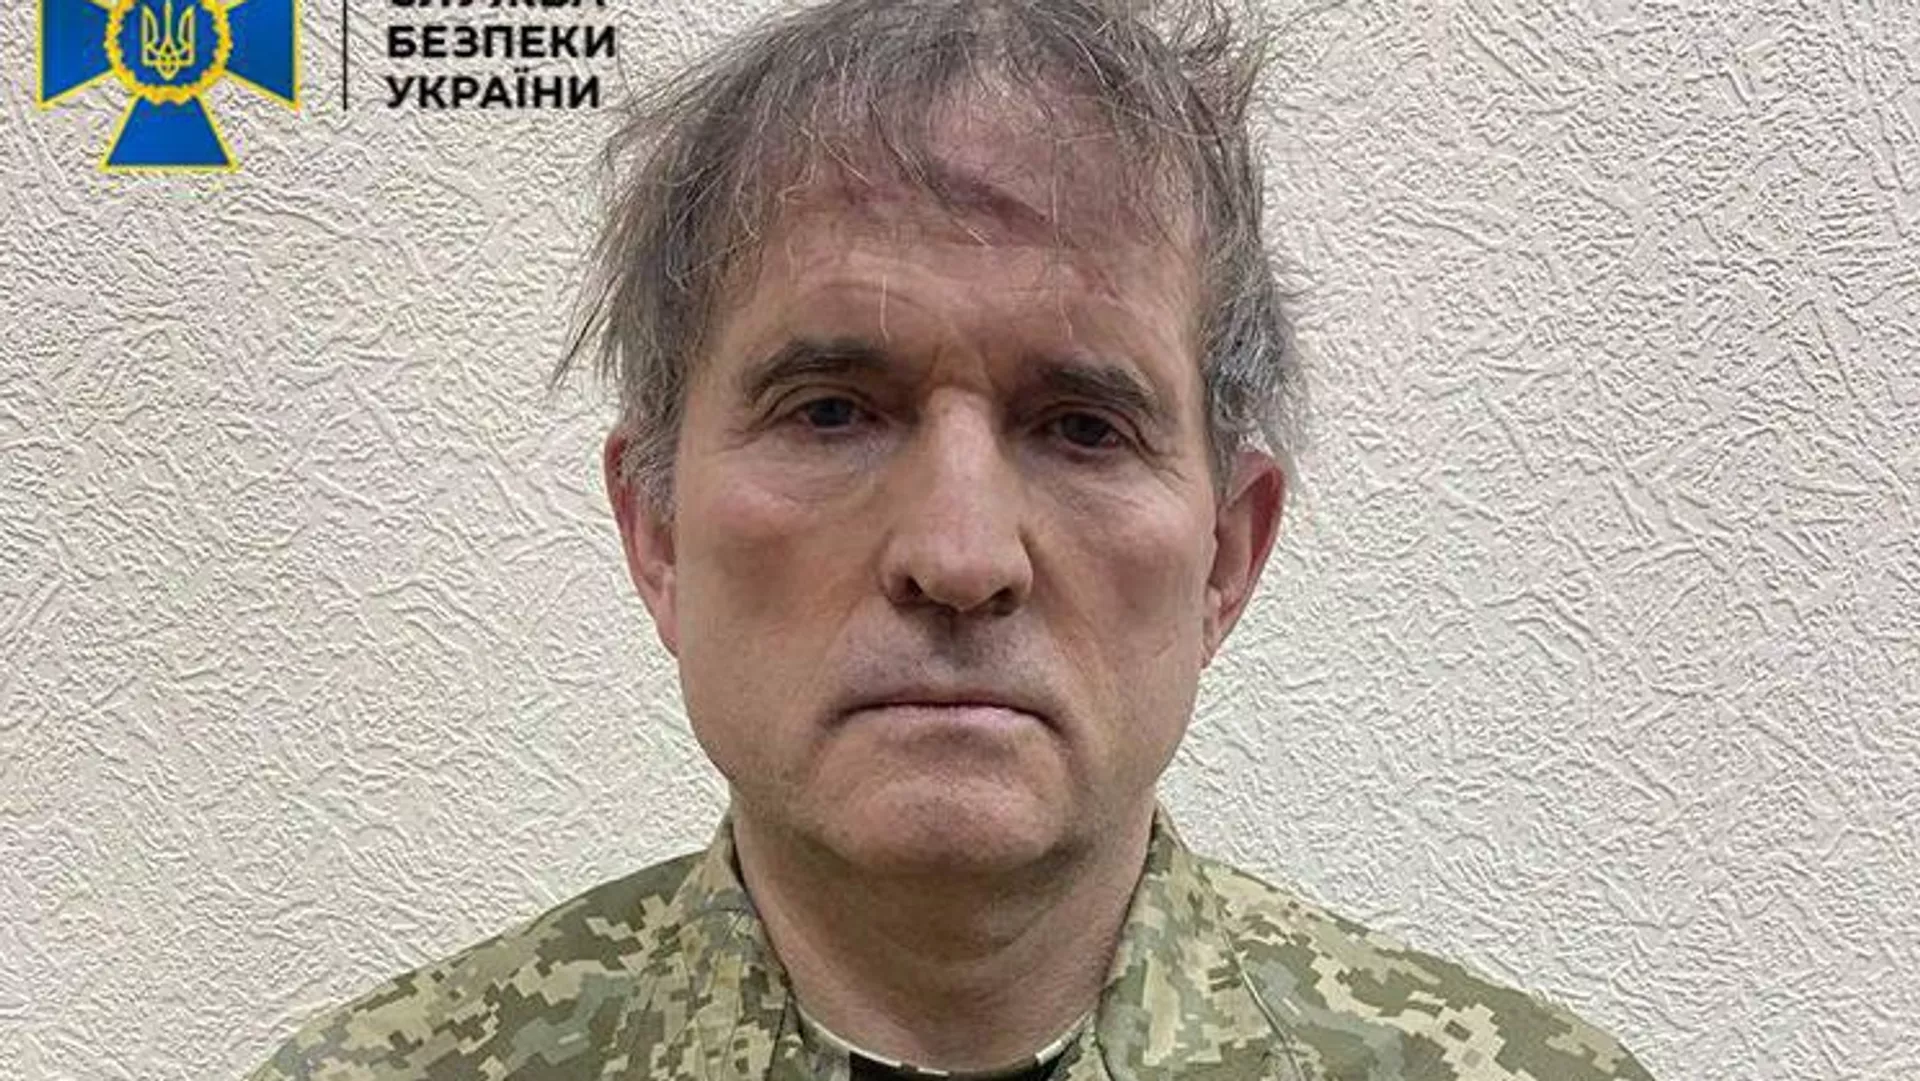 Виктор Медведчук арест